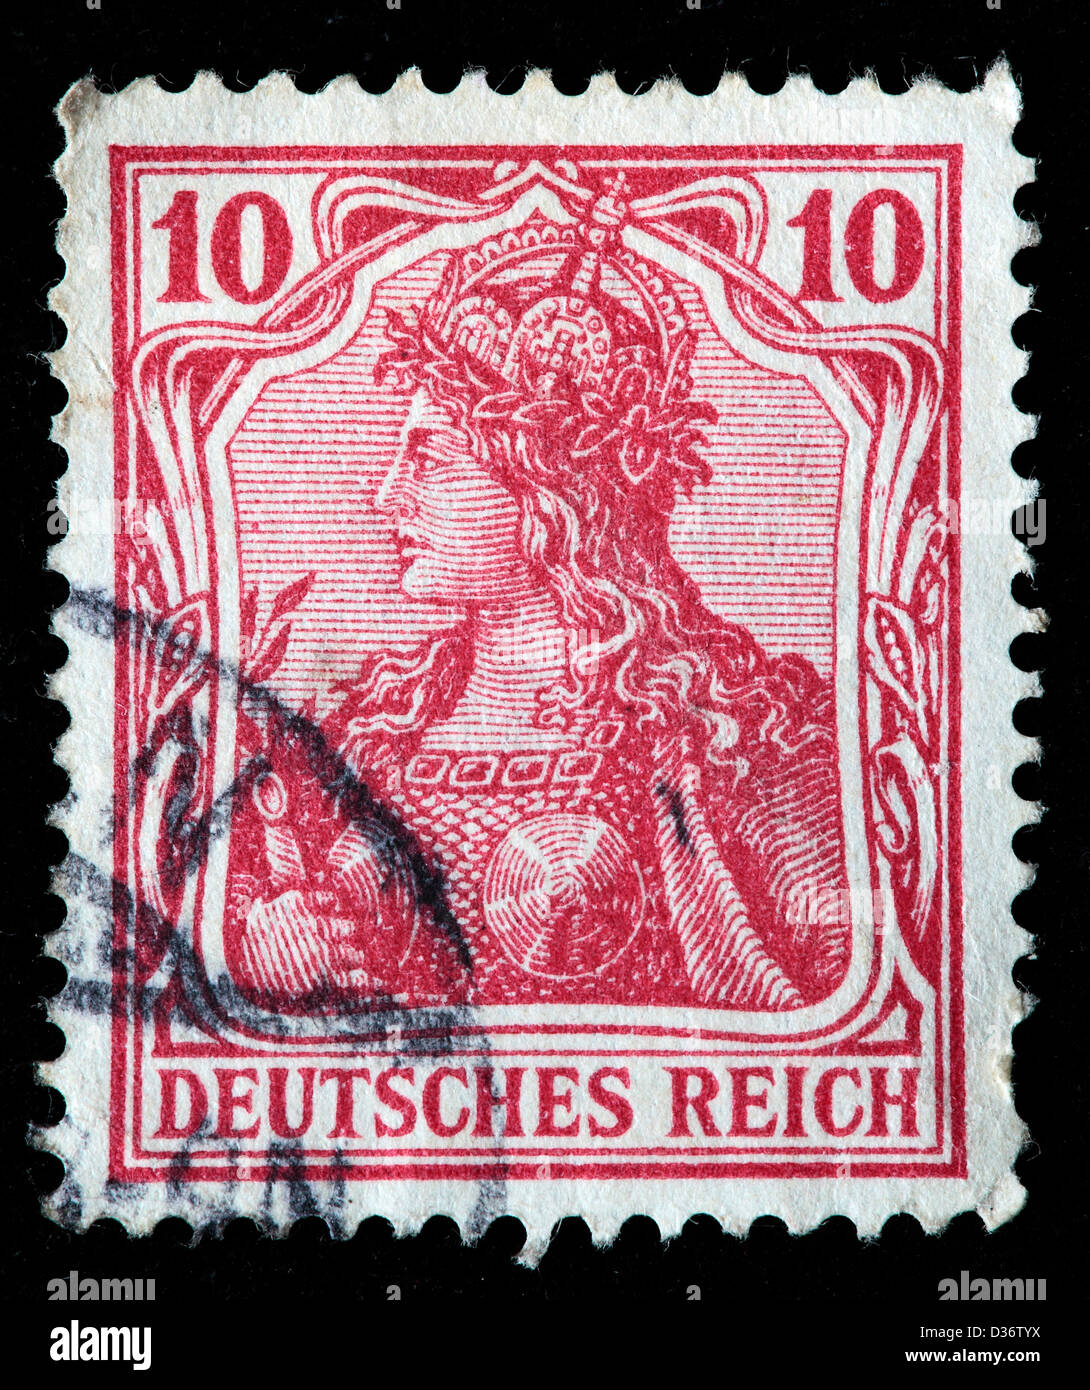 Germania, Briefmarke, Deutschland, 1902 Stockfoto